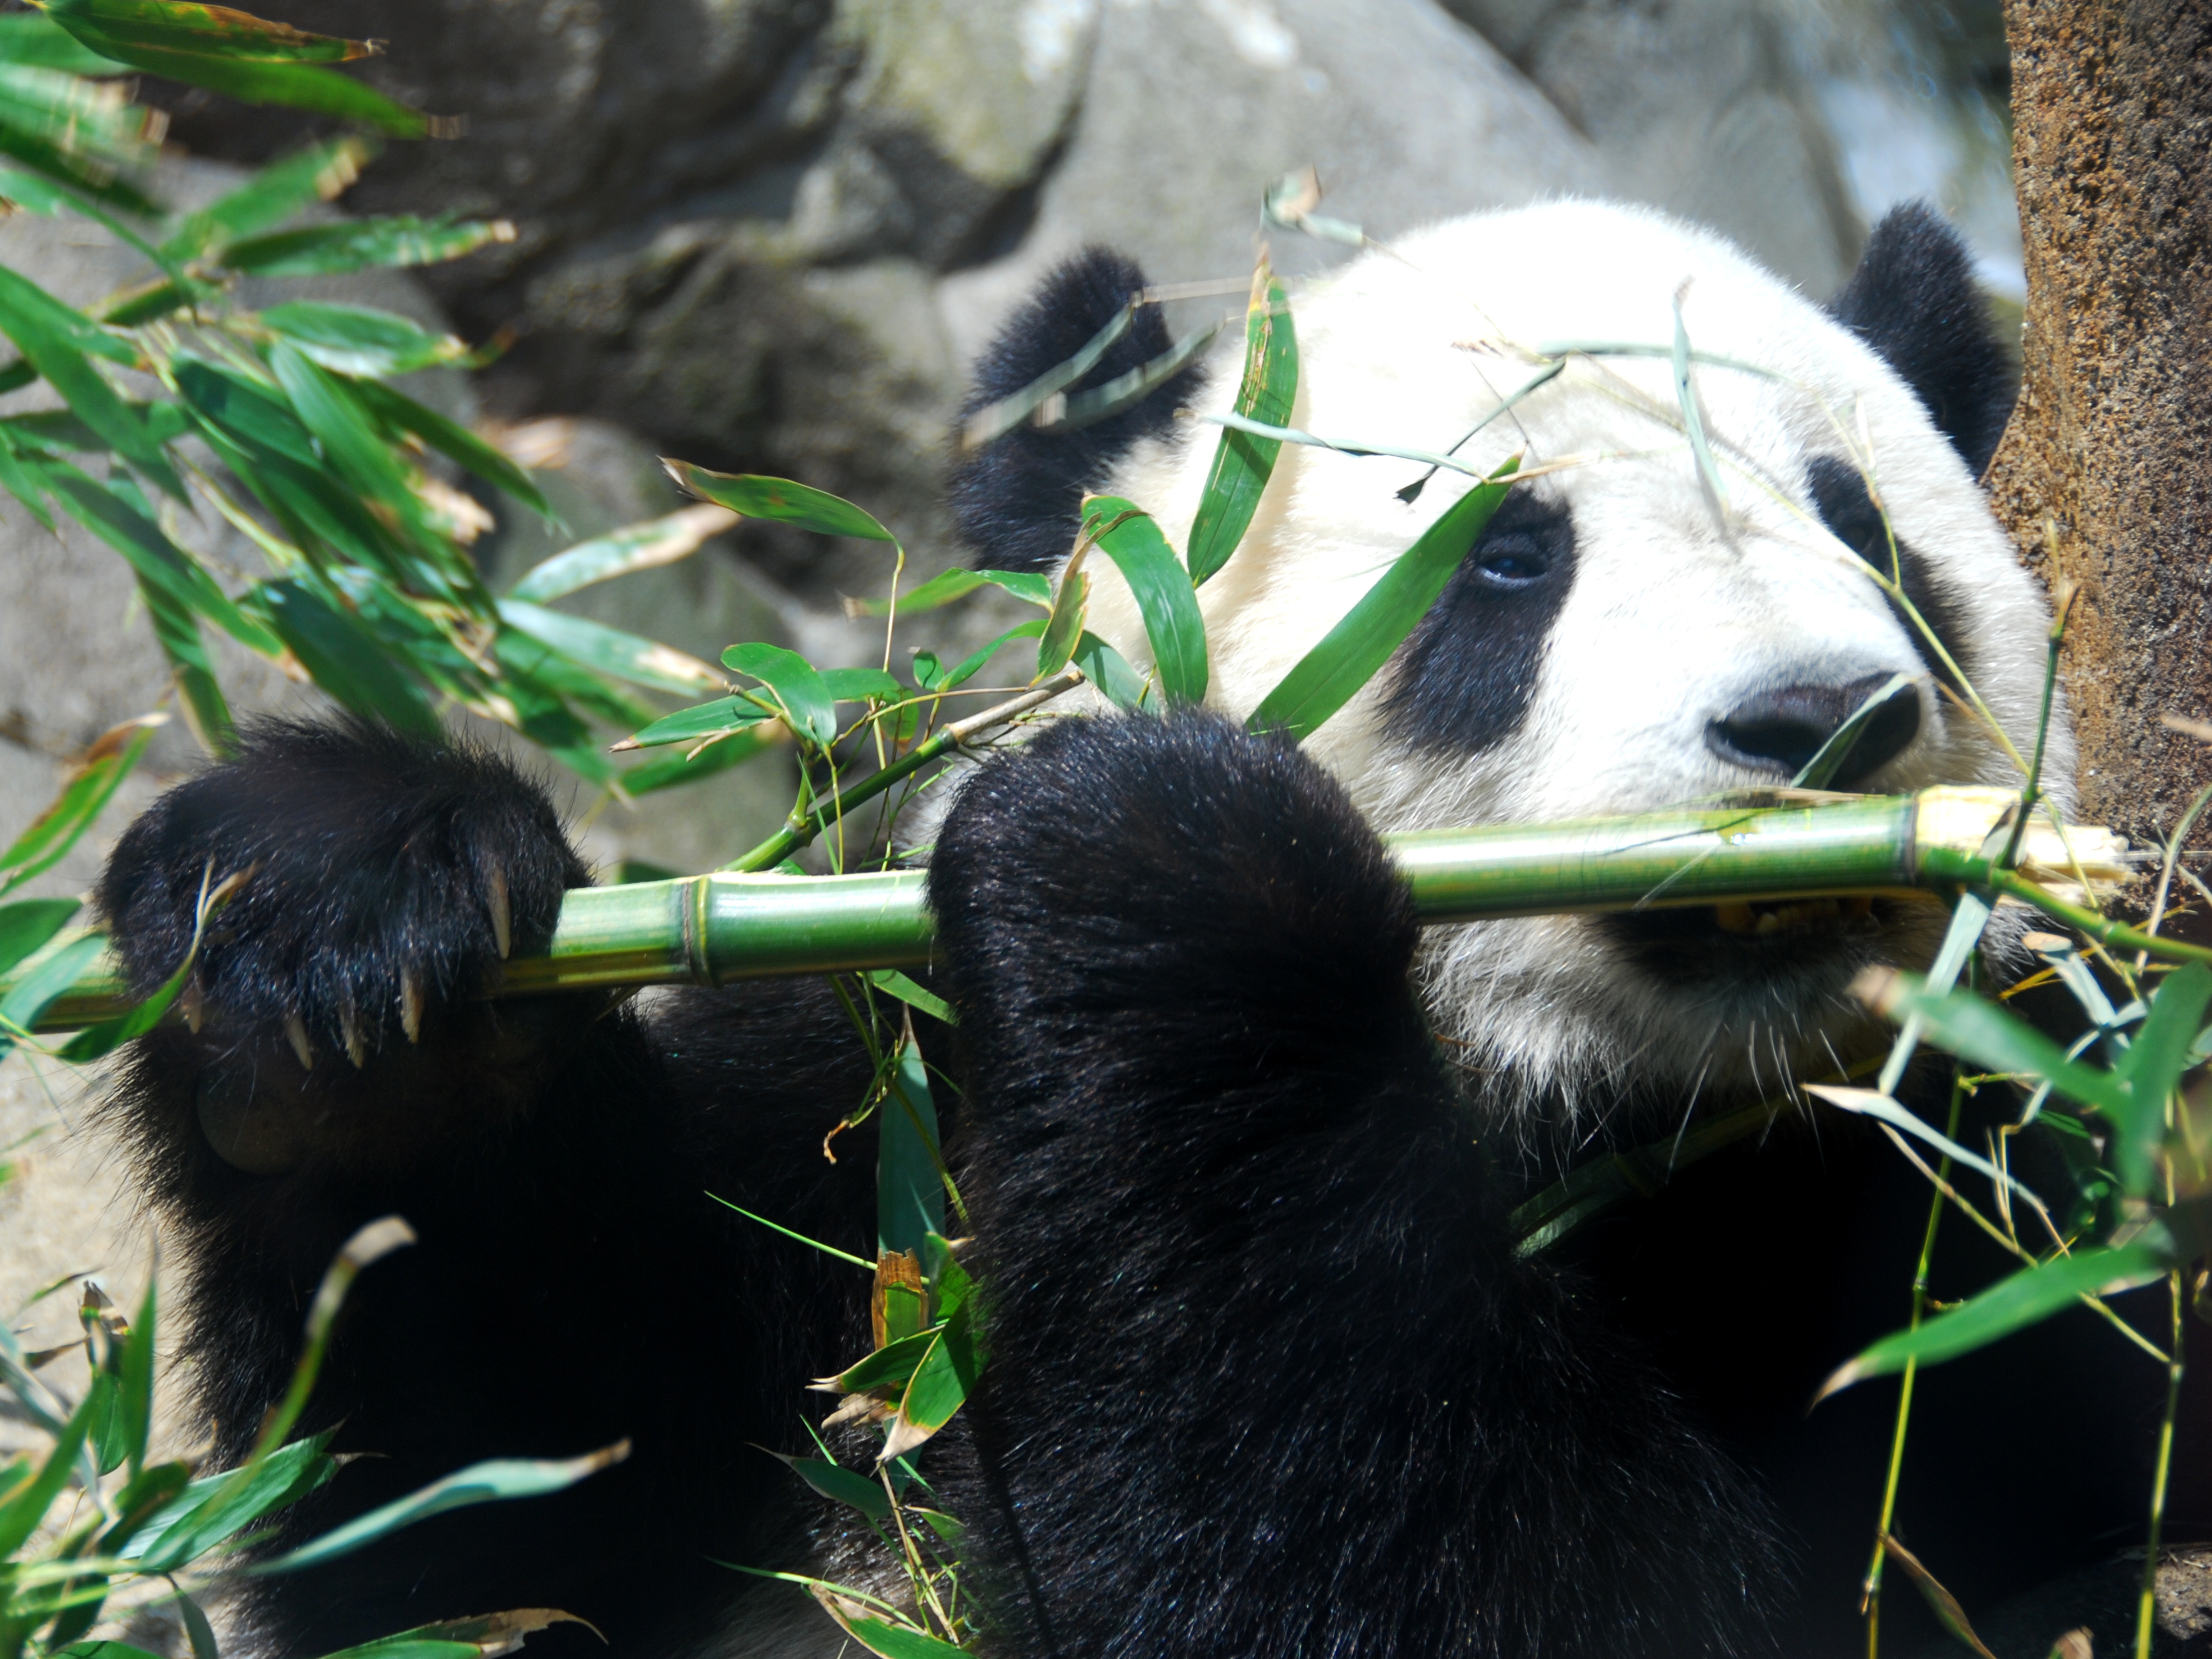 Where is Tai Shan the panda?